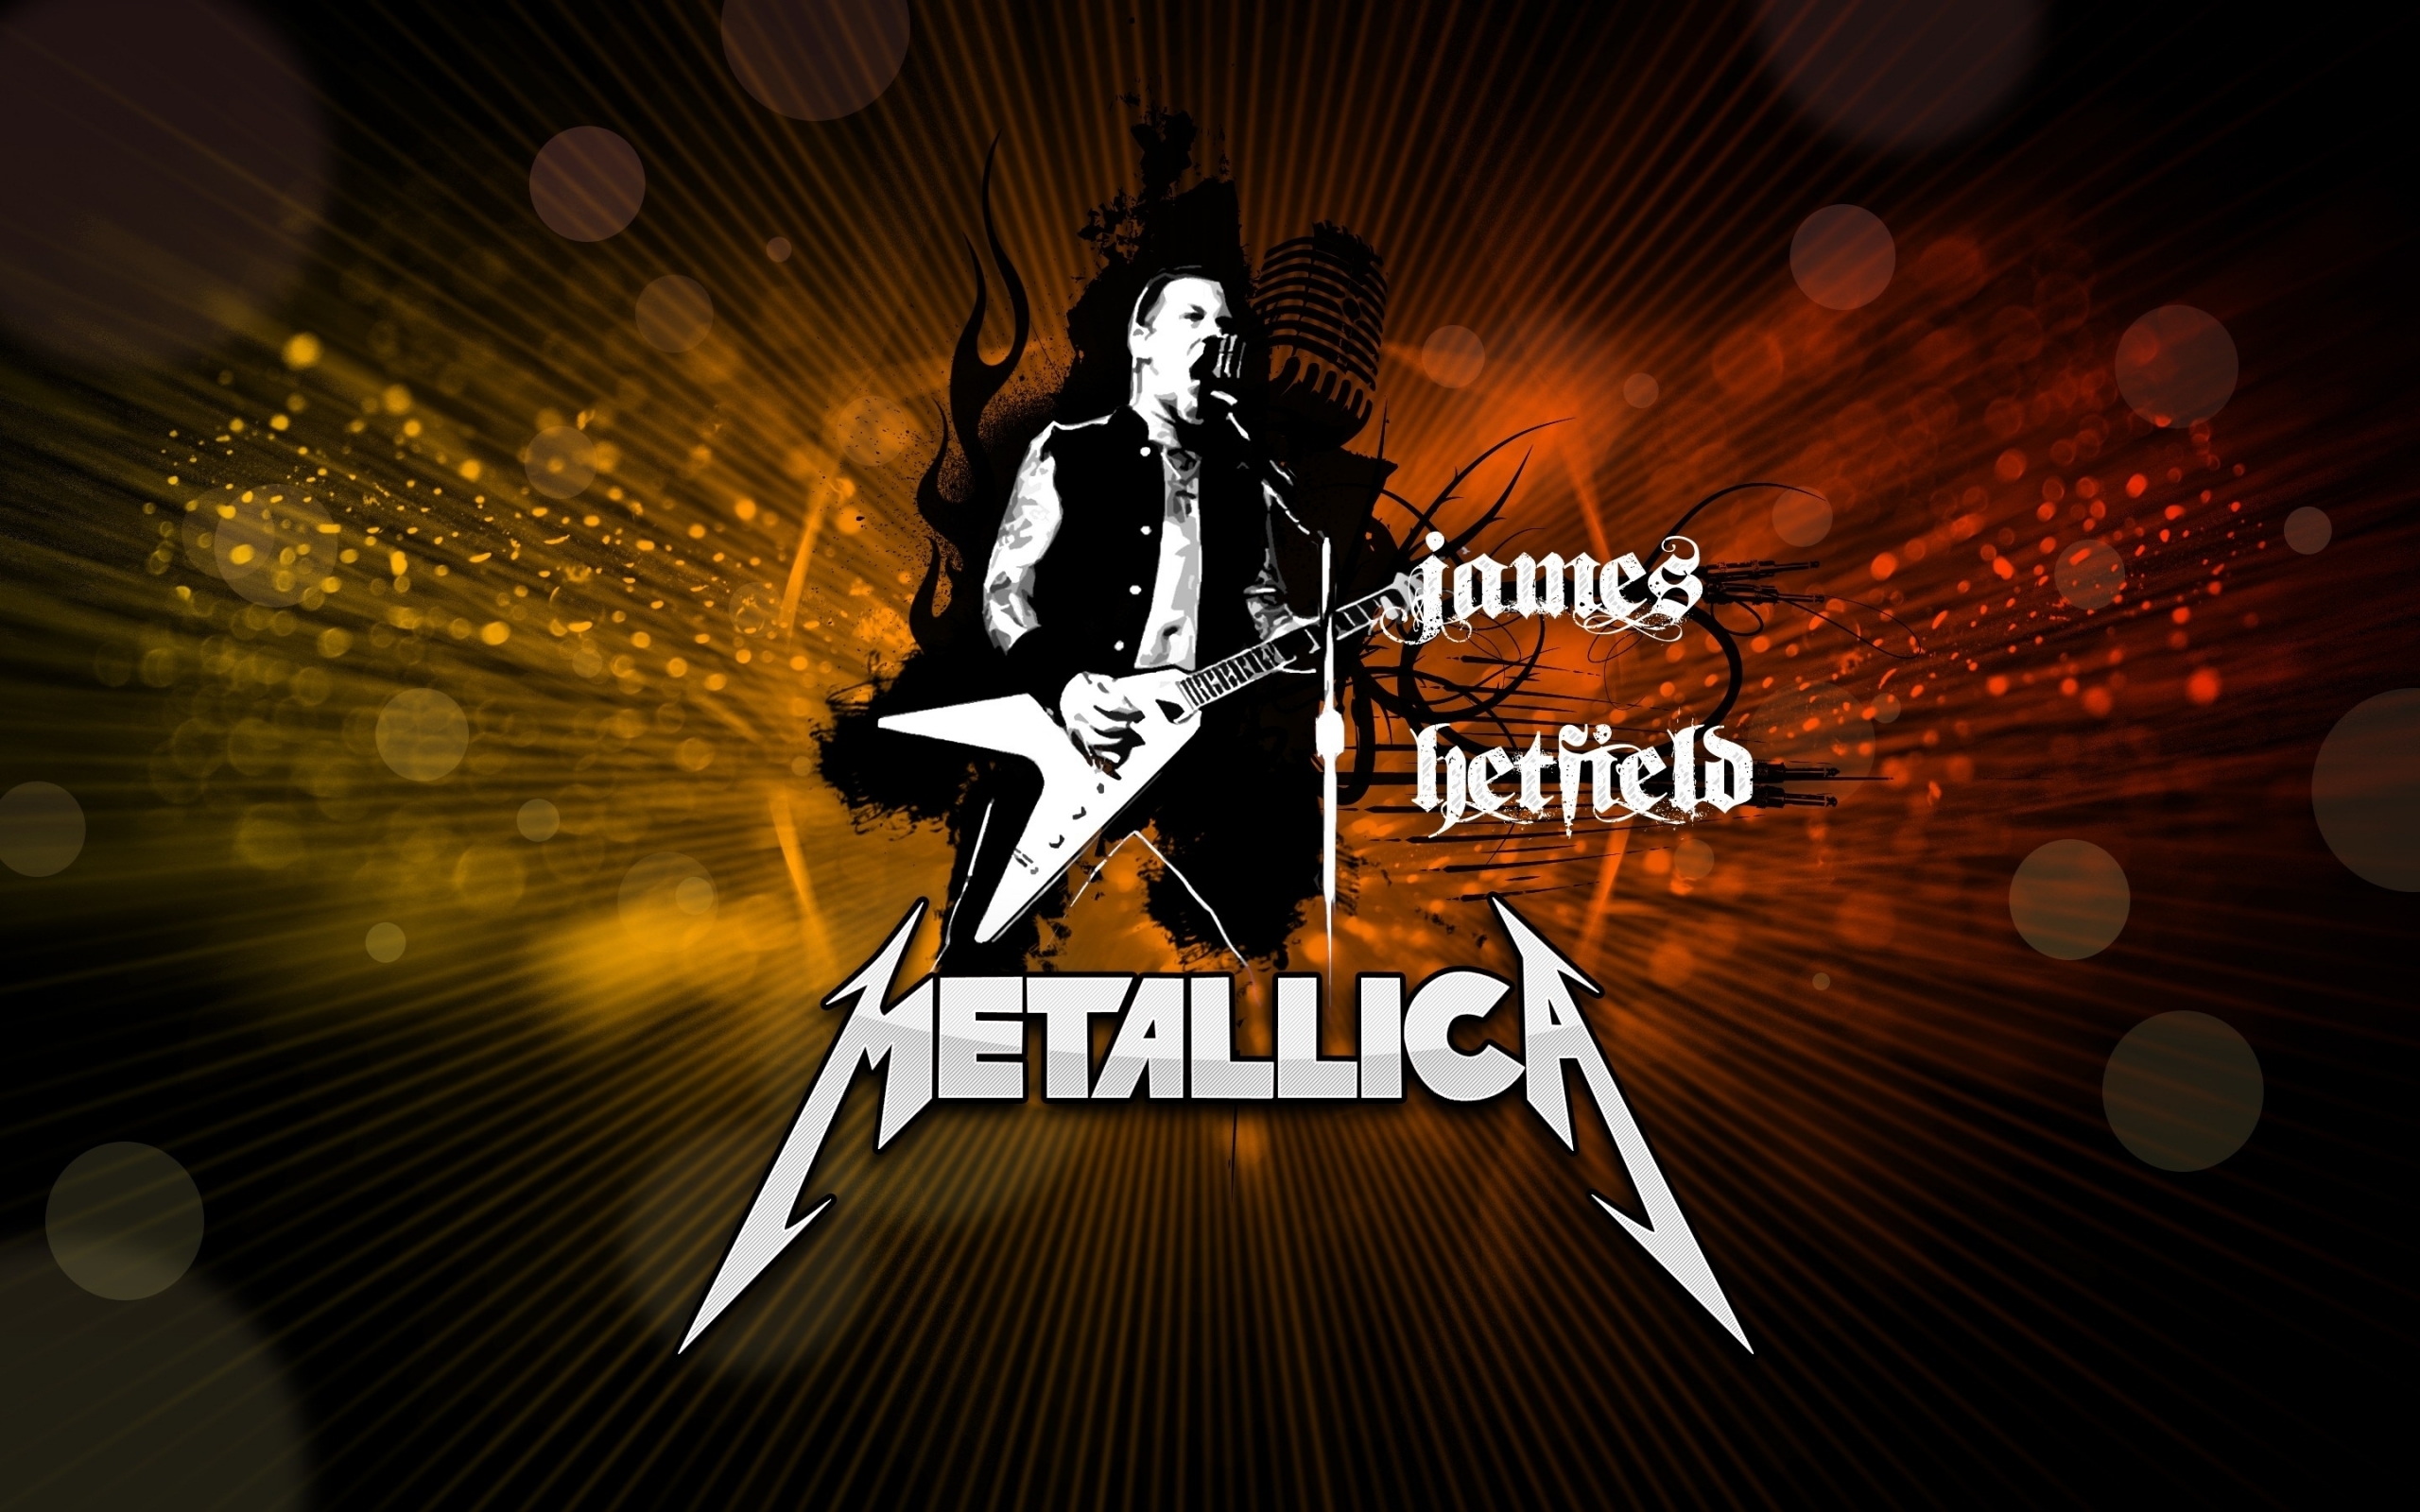 Популярные заставки и фоны Металлика (Metallica) на компьютер